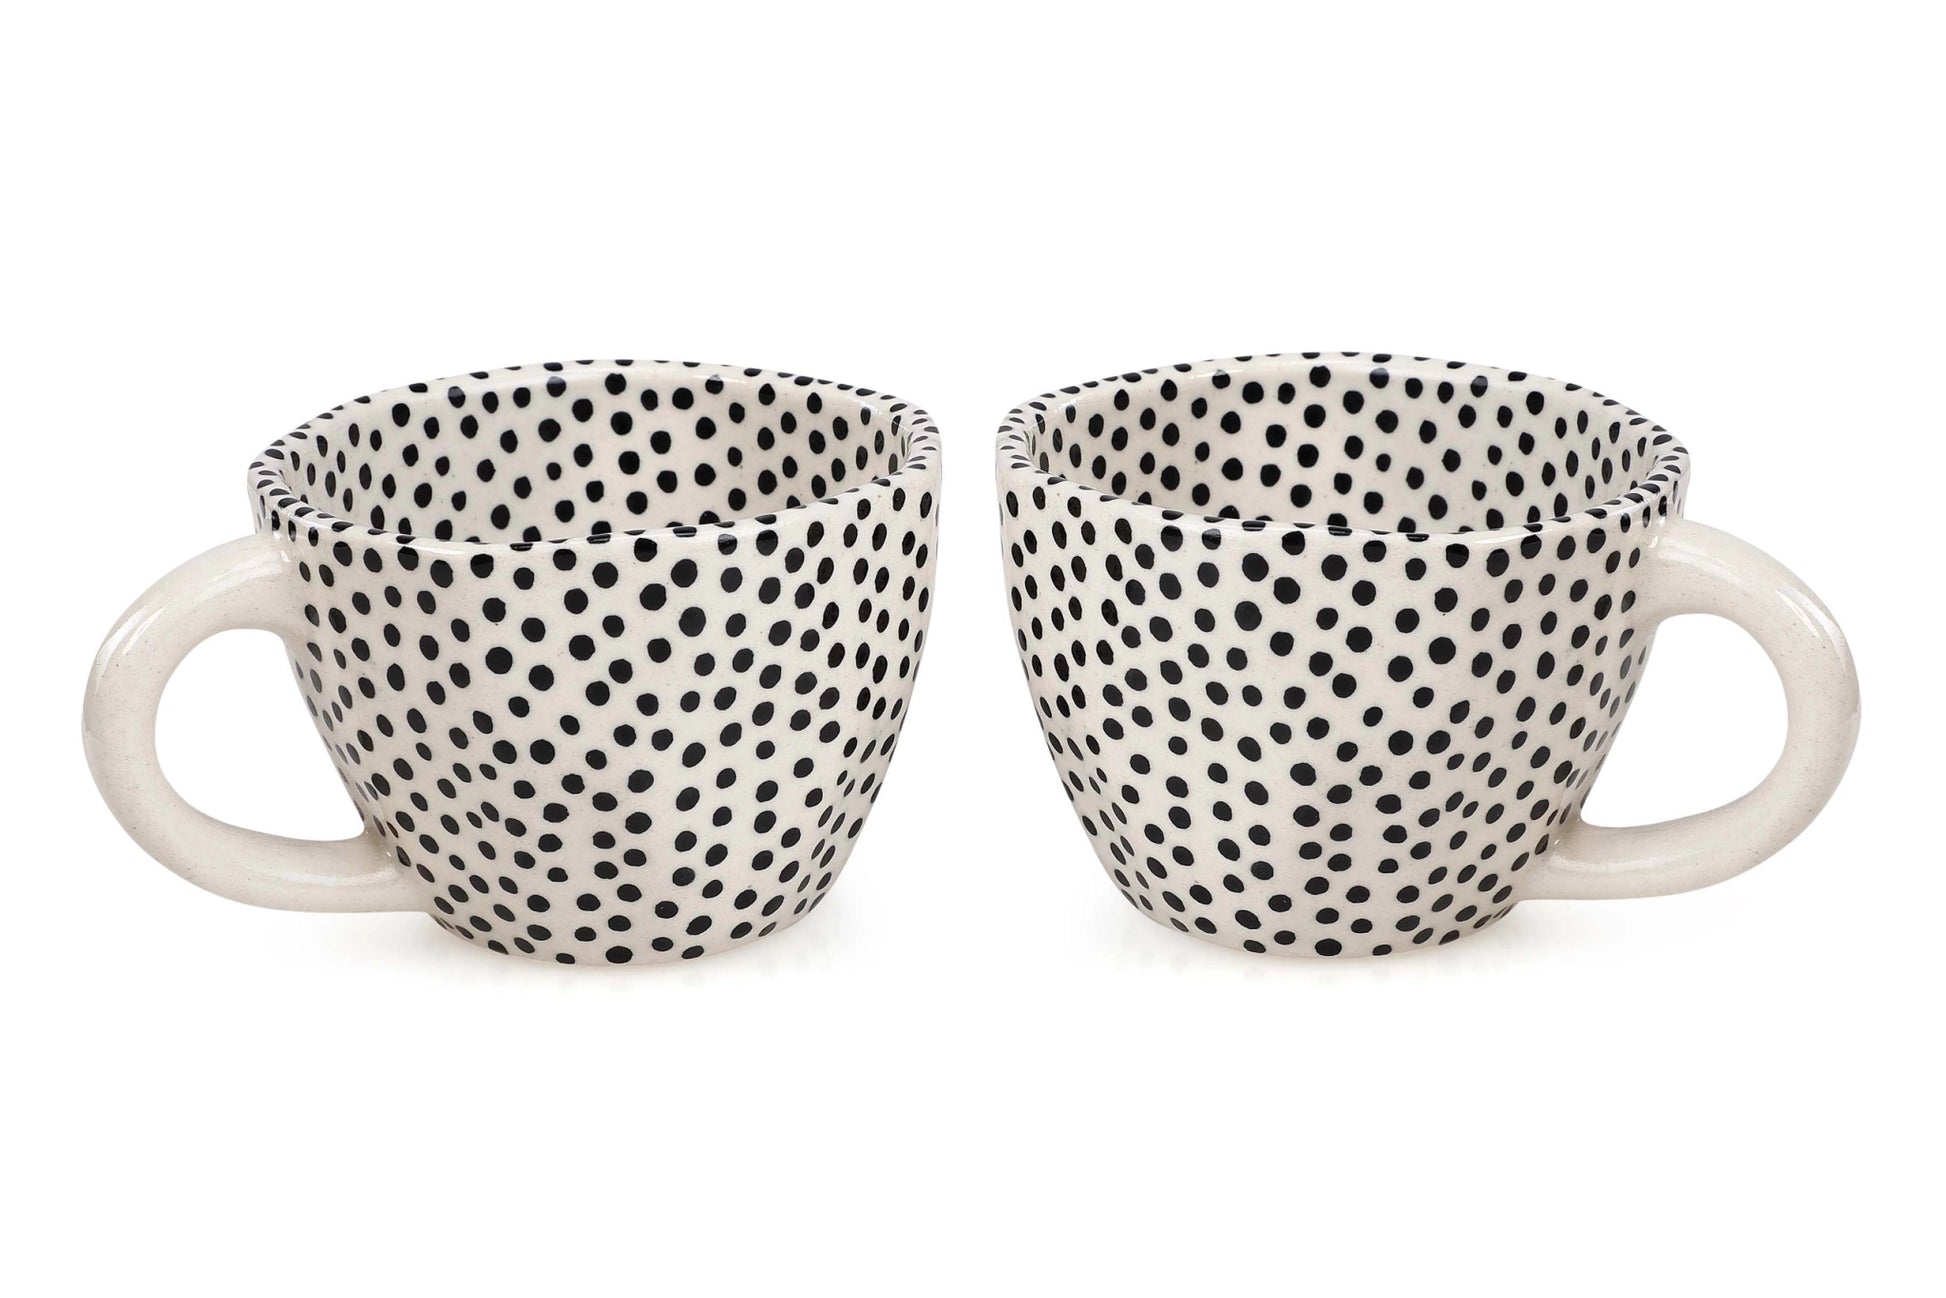 Ceramic Polka Dot Mug - Global Hues Market